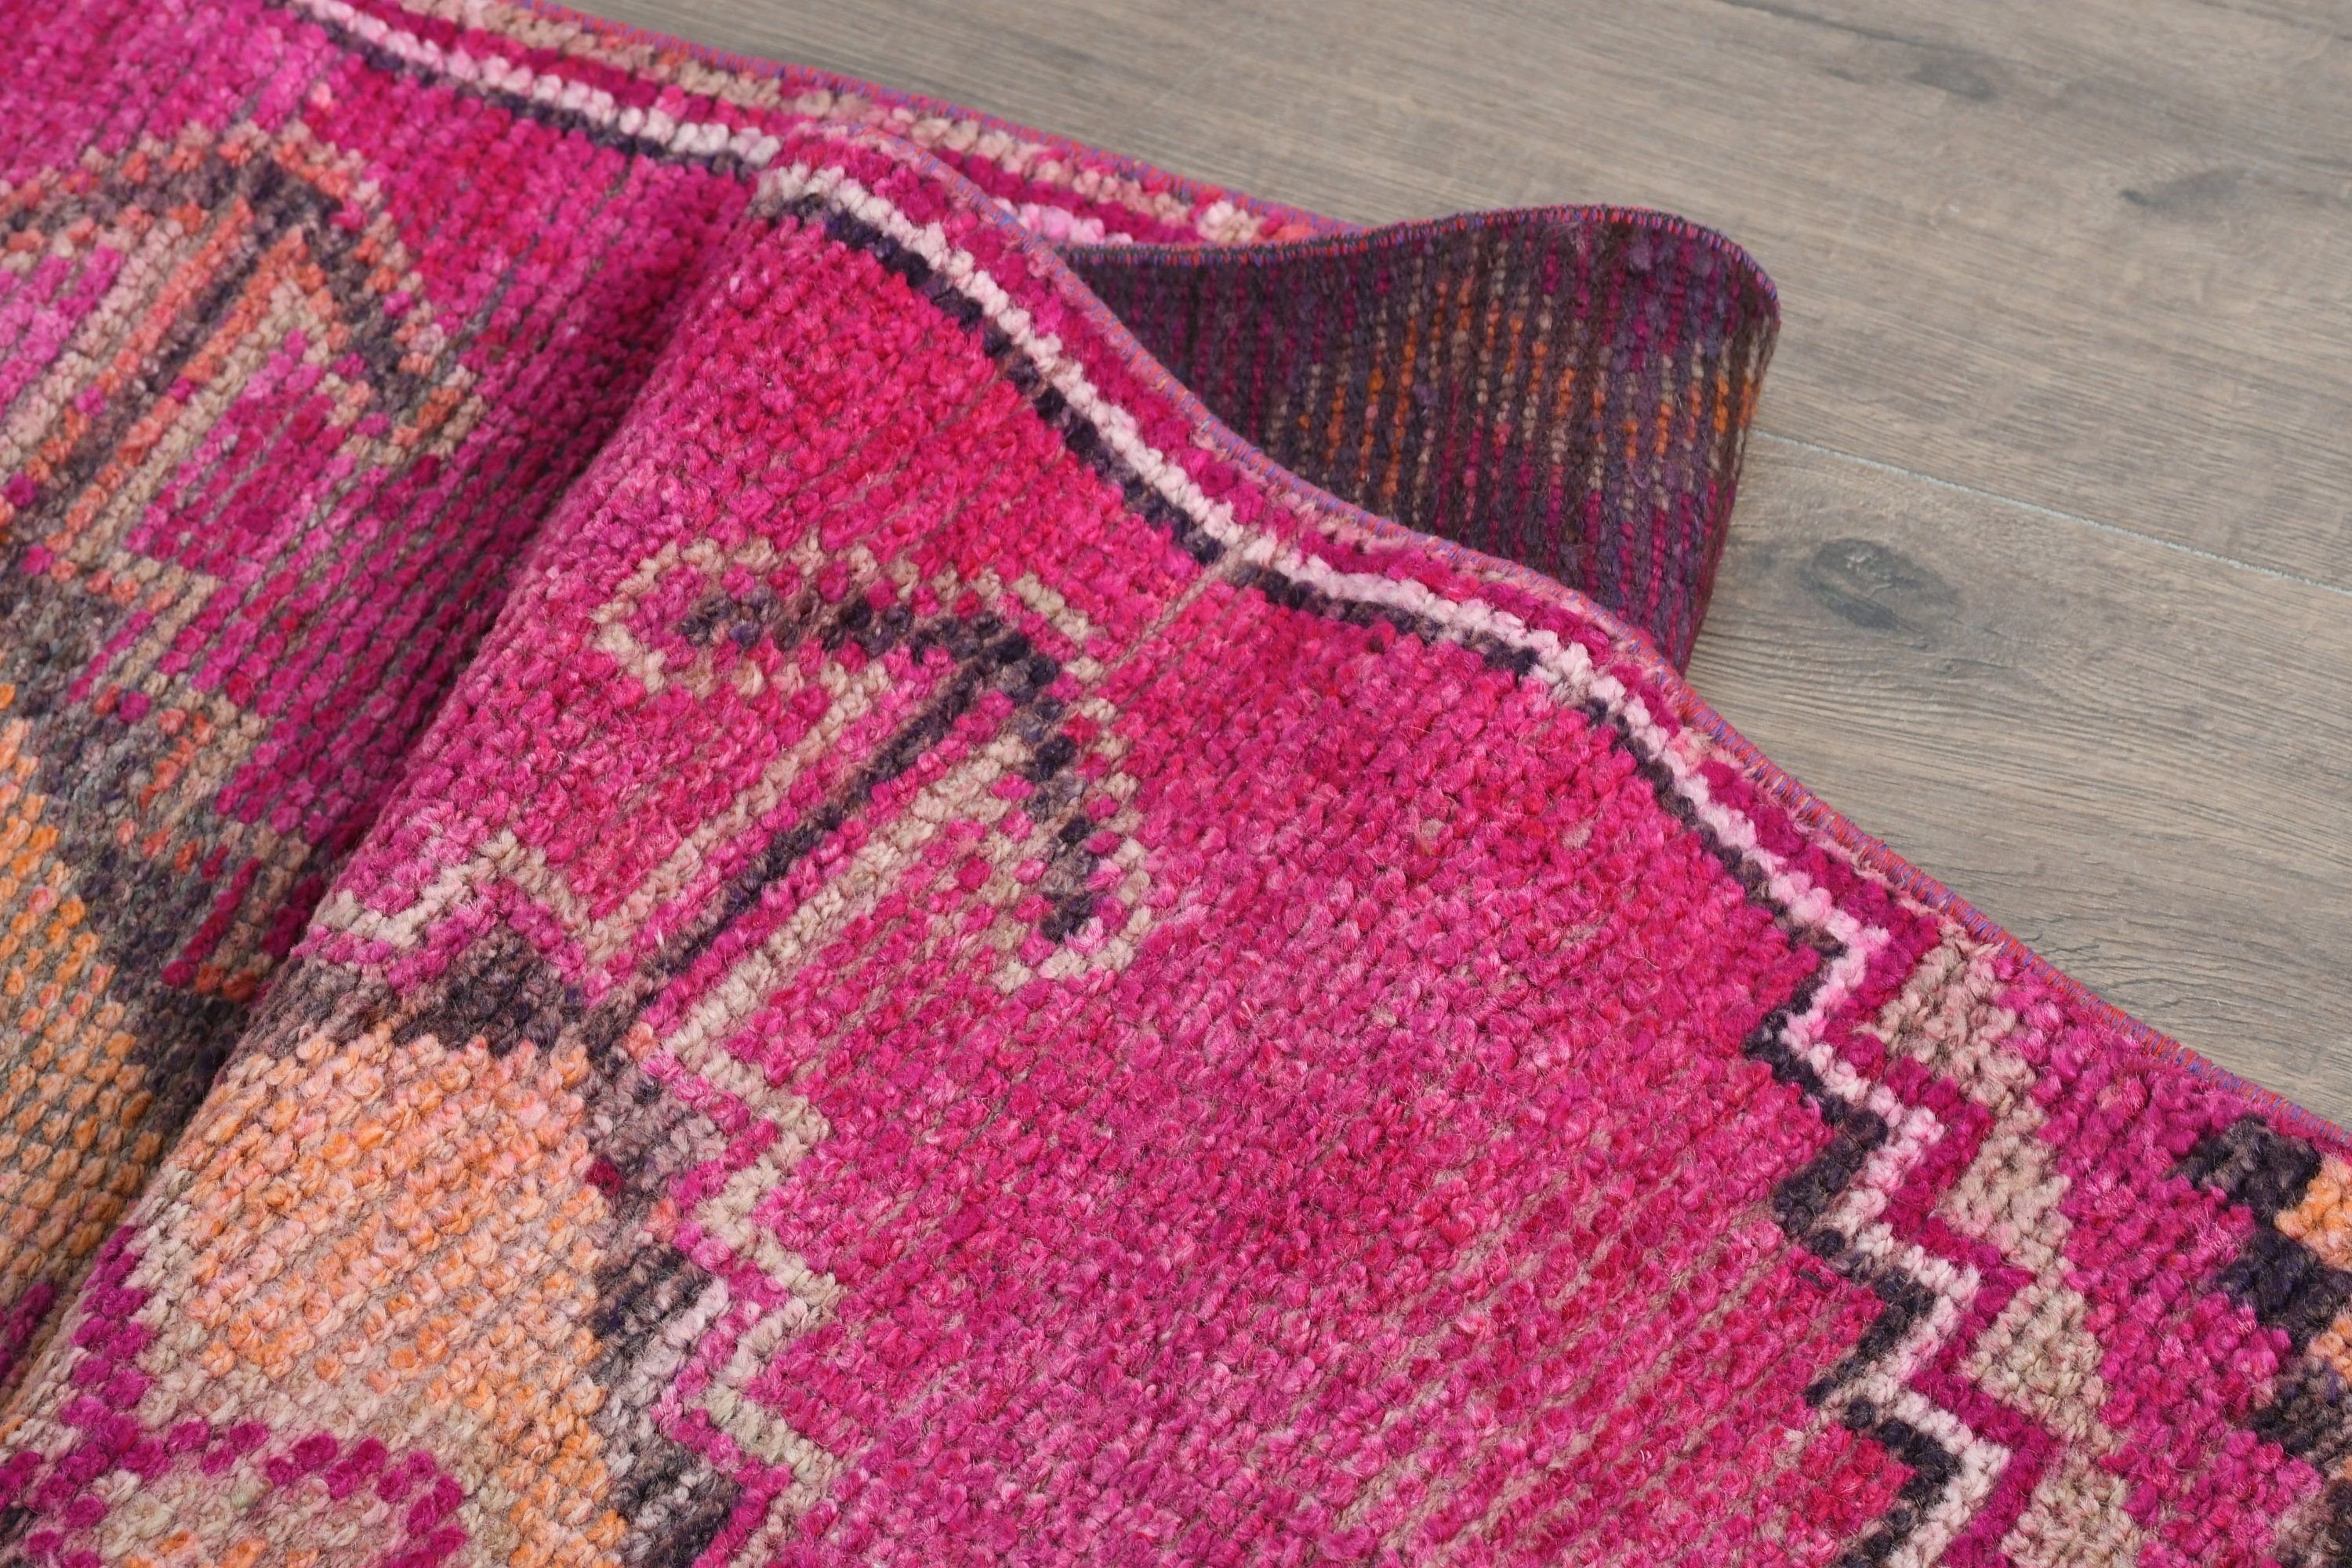 Pink Kitchen Rugs, Bedroom Rugs, Turkish Rug, 2.9x11 ft Runner Rugs, Vintage Rugs, Stair Rug, Office Rug, Kitchen Rugs, Rugs for Corridor